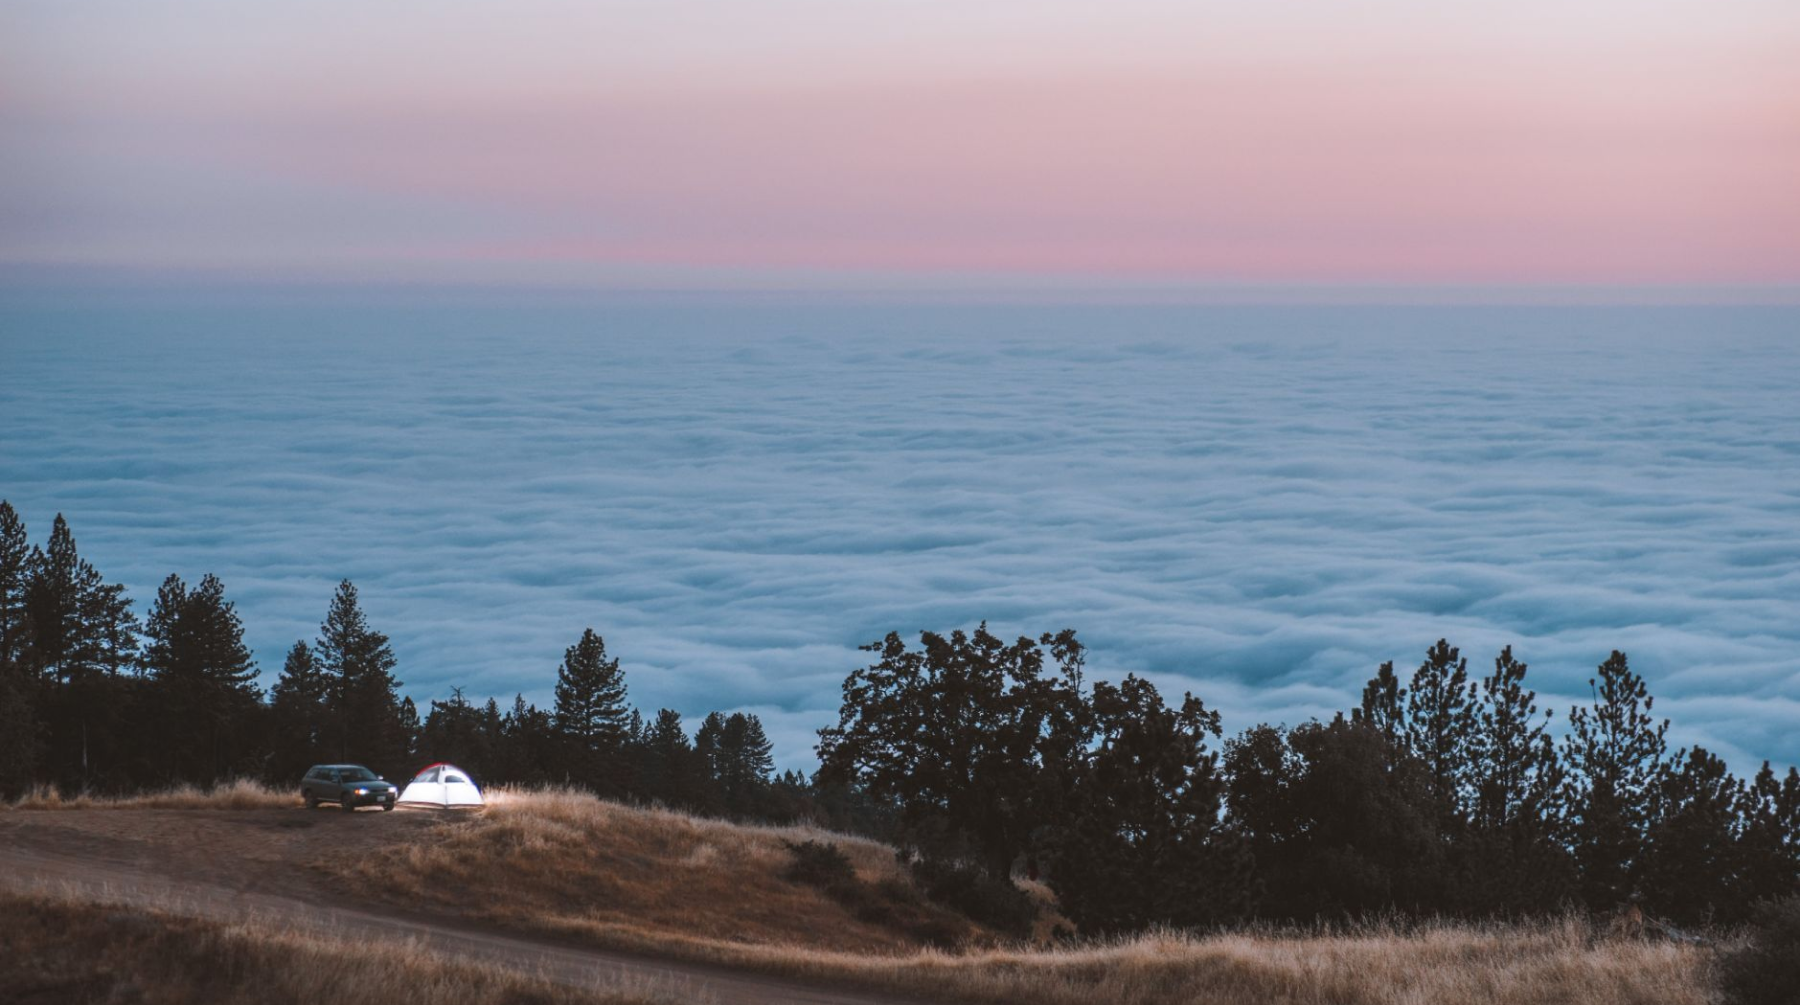 Tent camping at Big Sur, California at dusk